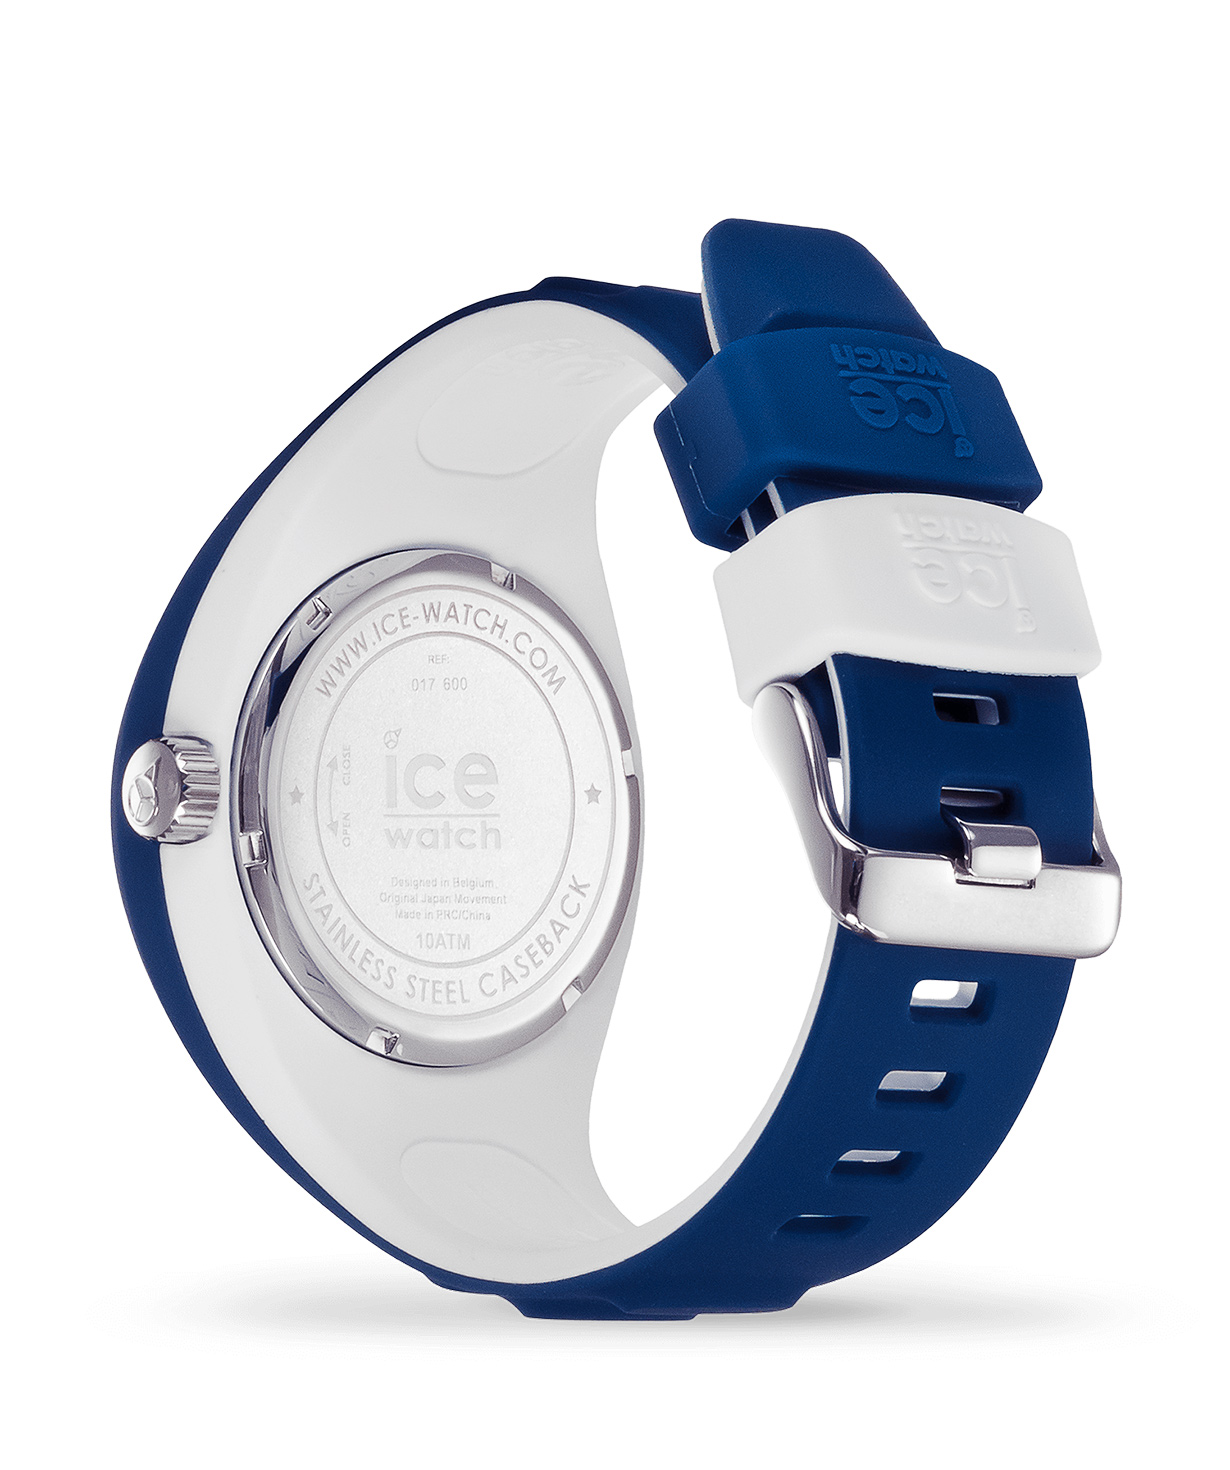 Ժամացույց «Ice-Watch» P. Leclercq - Dark blue